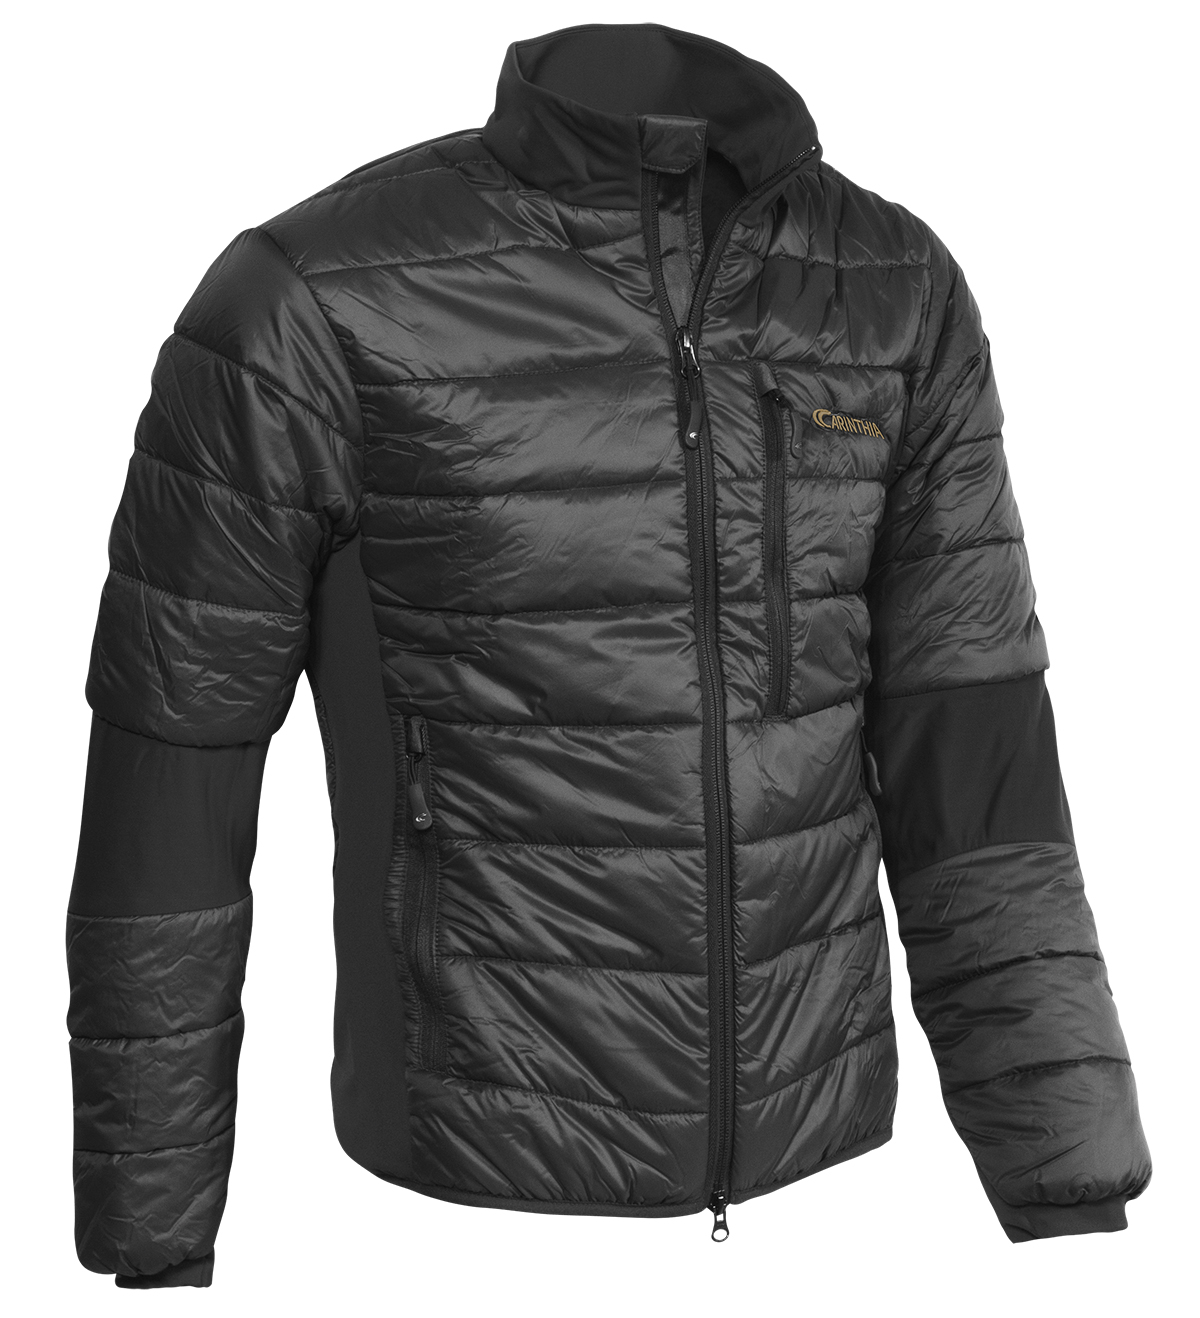 Carinthia G-LOFT ULTRA Jacket Größe L Thermojacke Outdoorjacke schwarz Jacke 